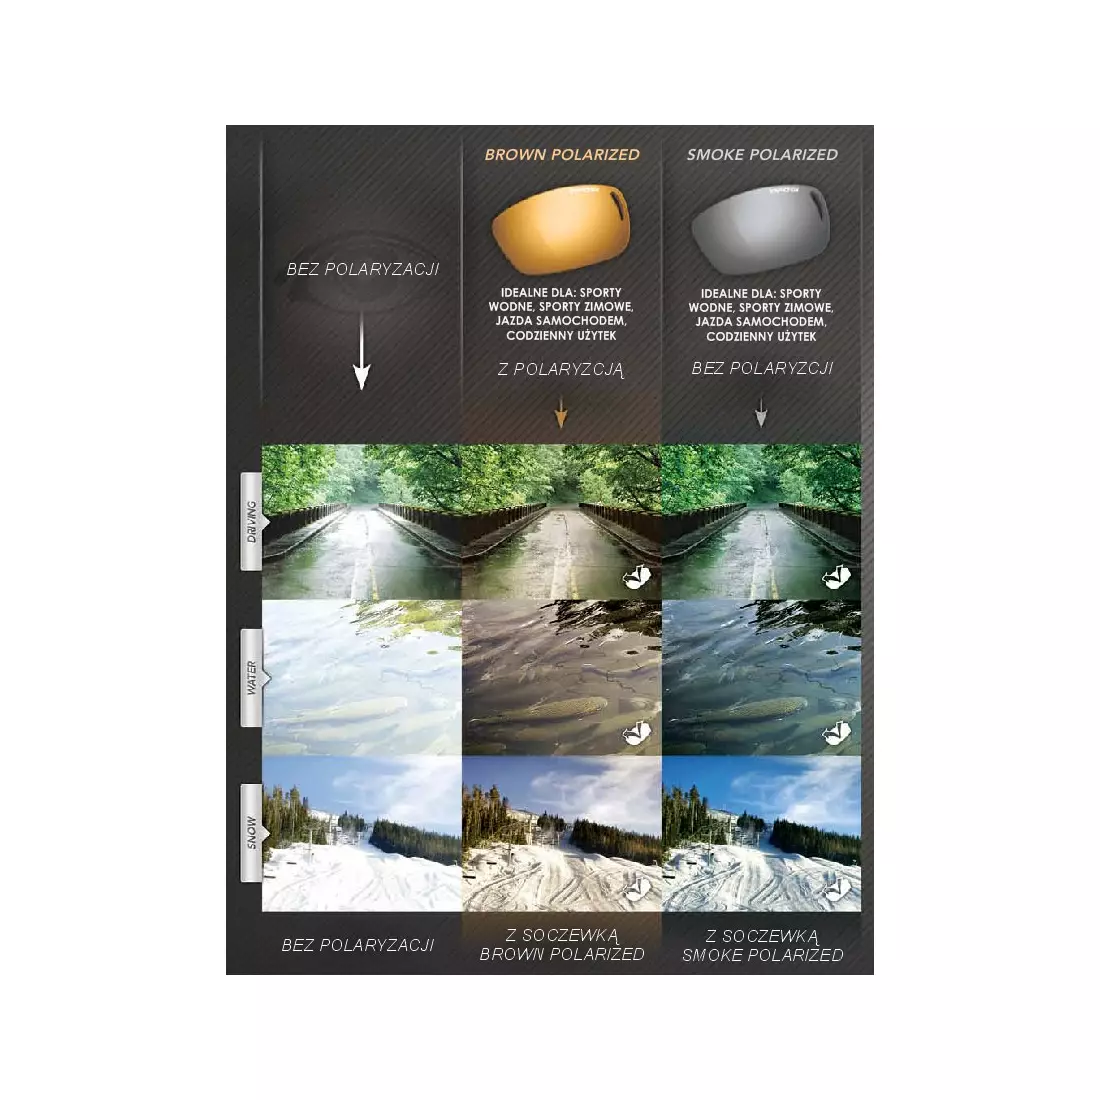 TIFOSI DURO POLARIZED FOTOTEC matné čierne fotochromatické sklá (1 sklo Hnedé POLARIZAČNÉ PHOTOCHROME 28,7%-9,4% priepustnosť svetla) TFI-1030600160